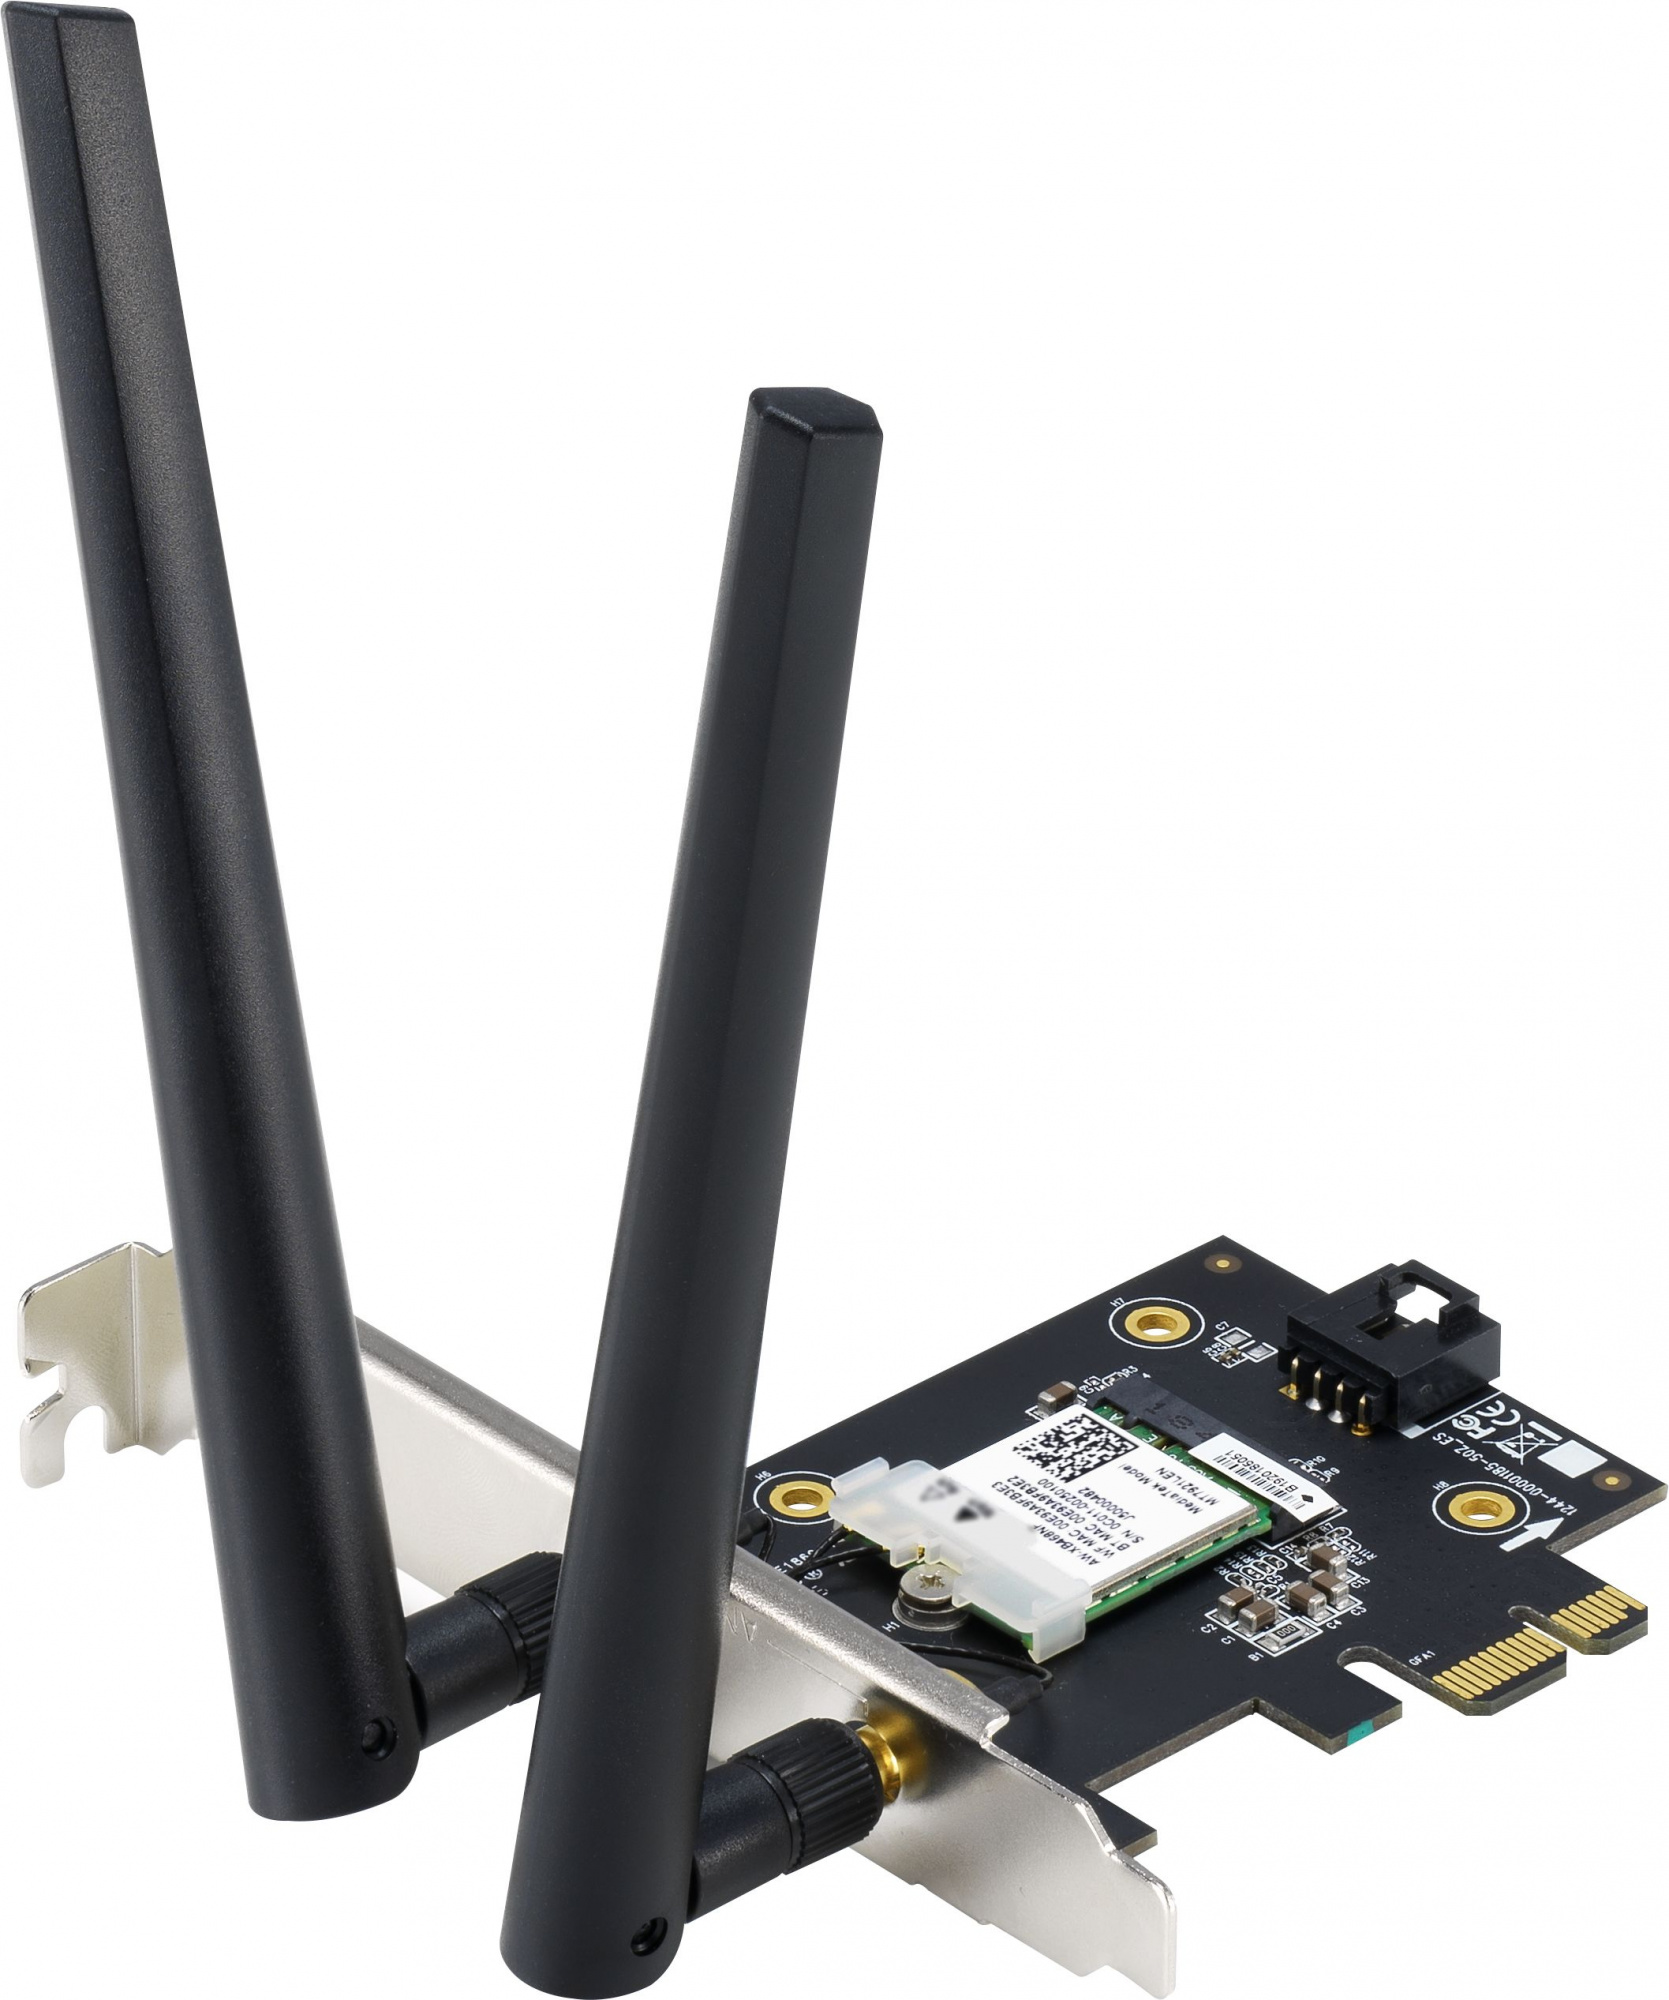 Сетевой адаптер WiFi + Bluetooth Asus PCE-AX1800 AX1800 PCI Express (ант.внеш.съем) 2ант.